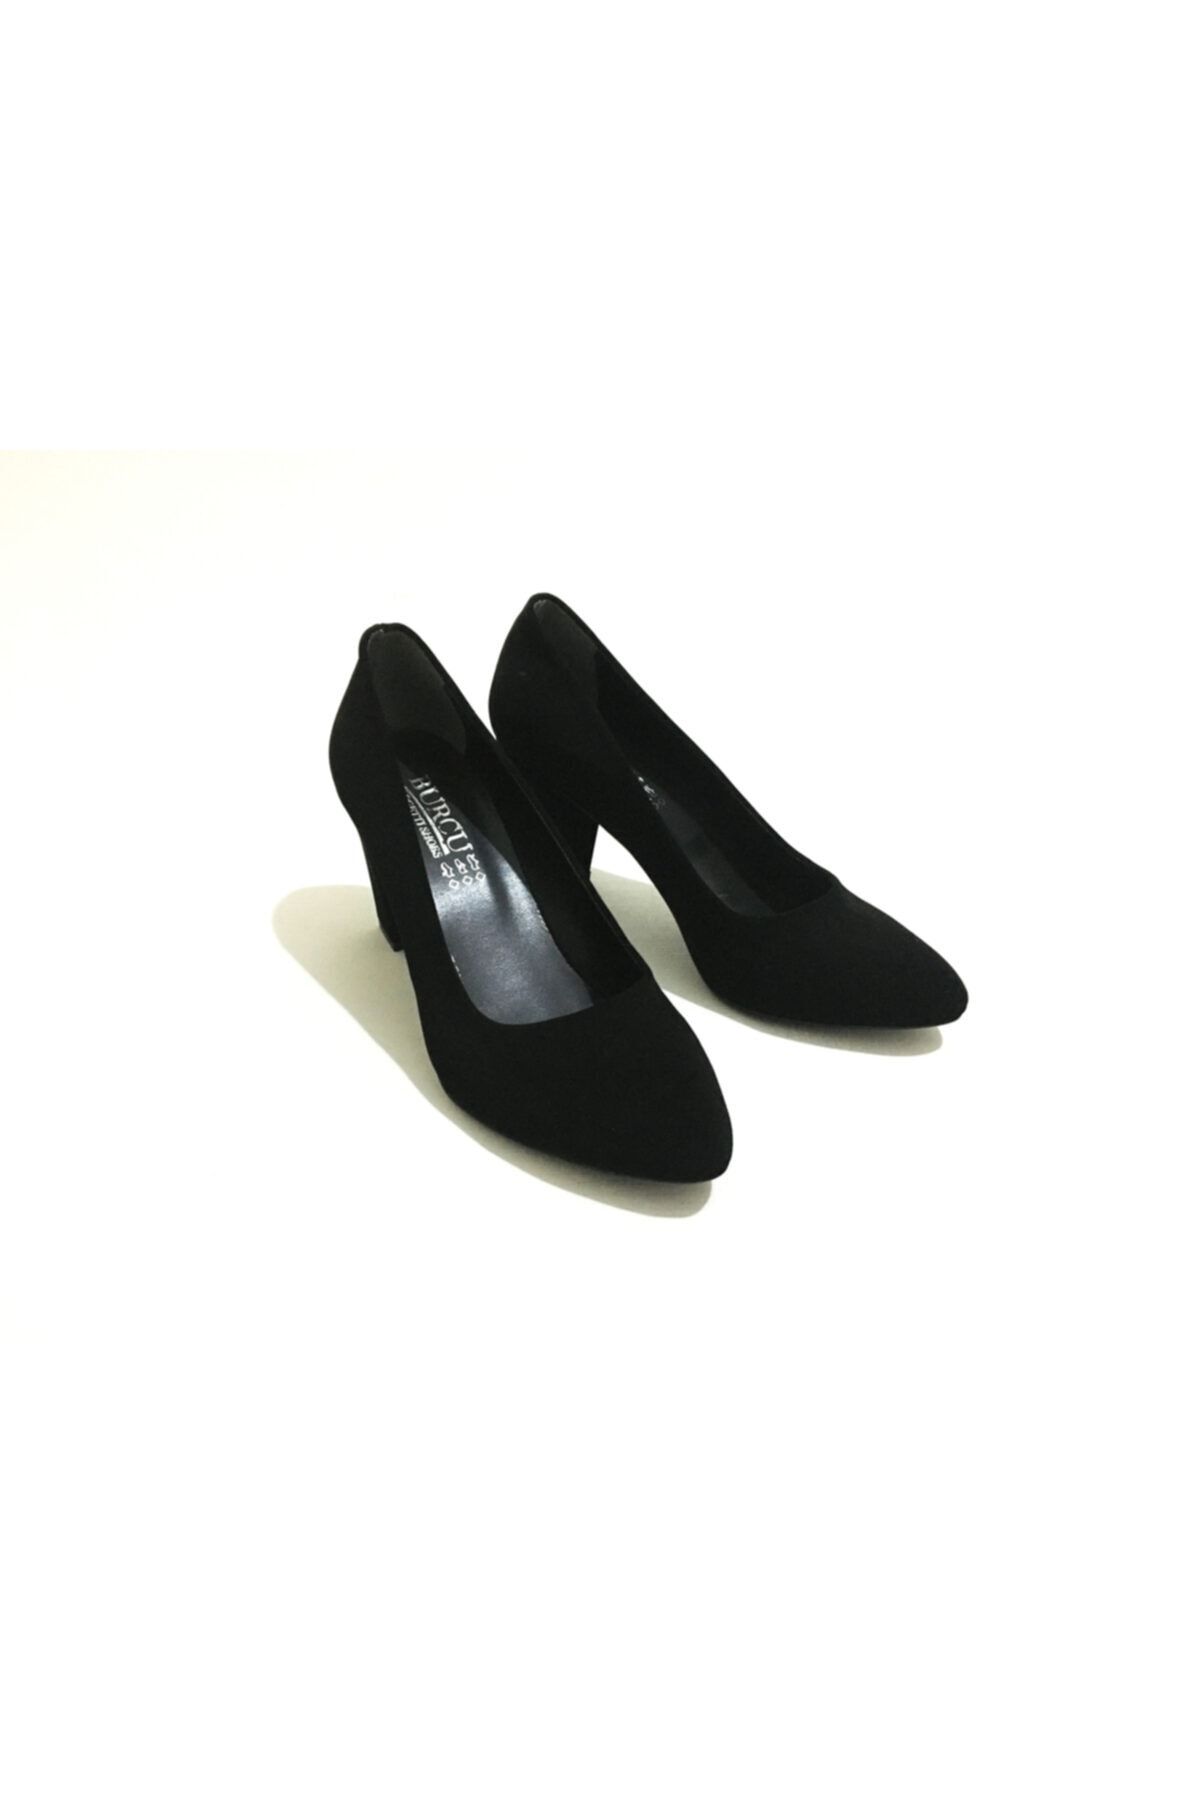 Erdem Kadın Kalın Topuklu Günlük Rahat Ayakkabı - Siyah Süet Model